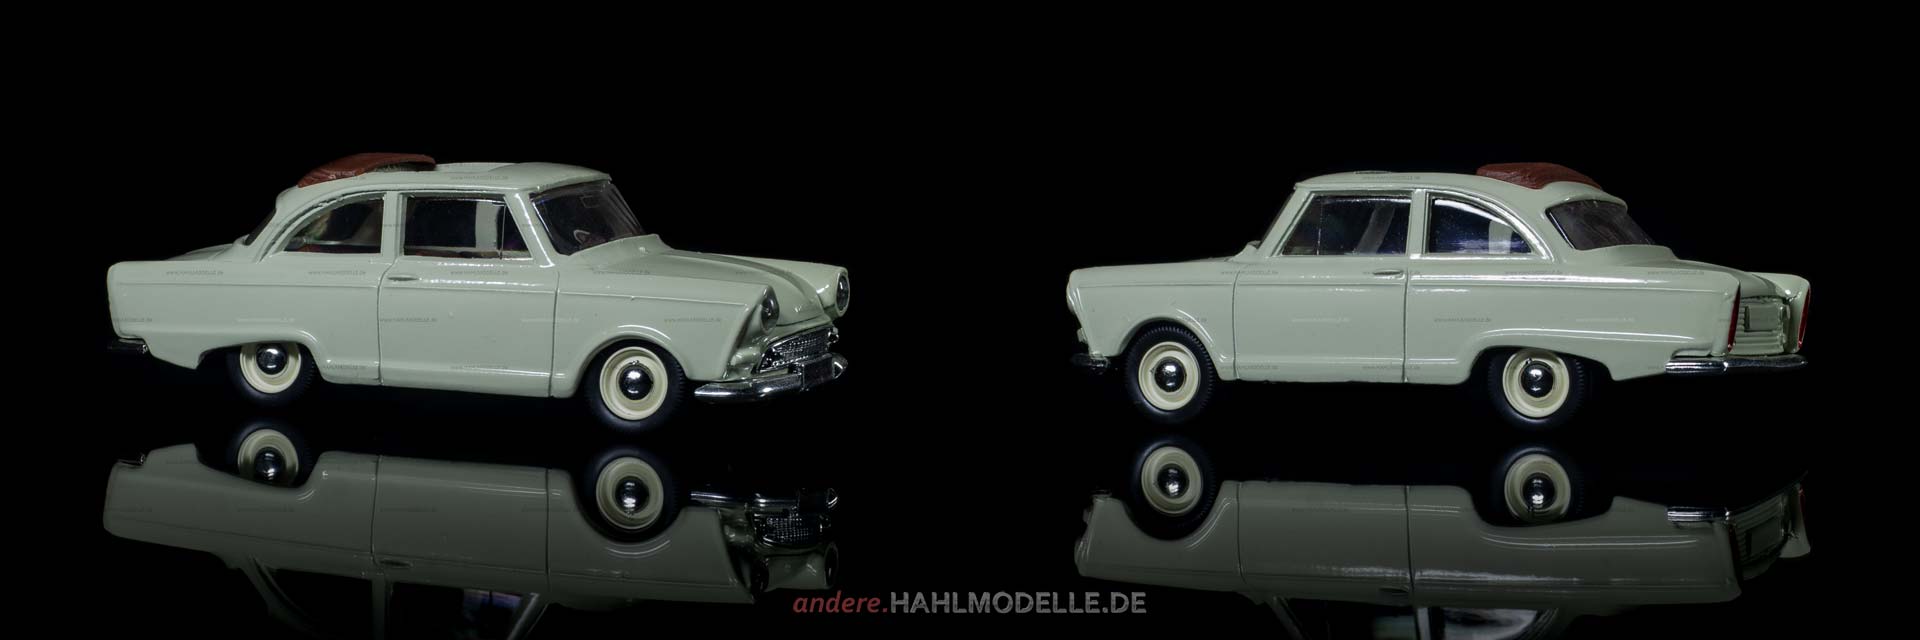 Auto Union DKW Junior de Luxe | Limousine | Vitesse | 1:43 | www.andere.hahlmodelle.de